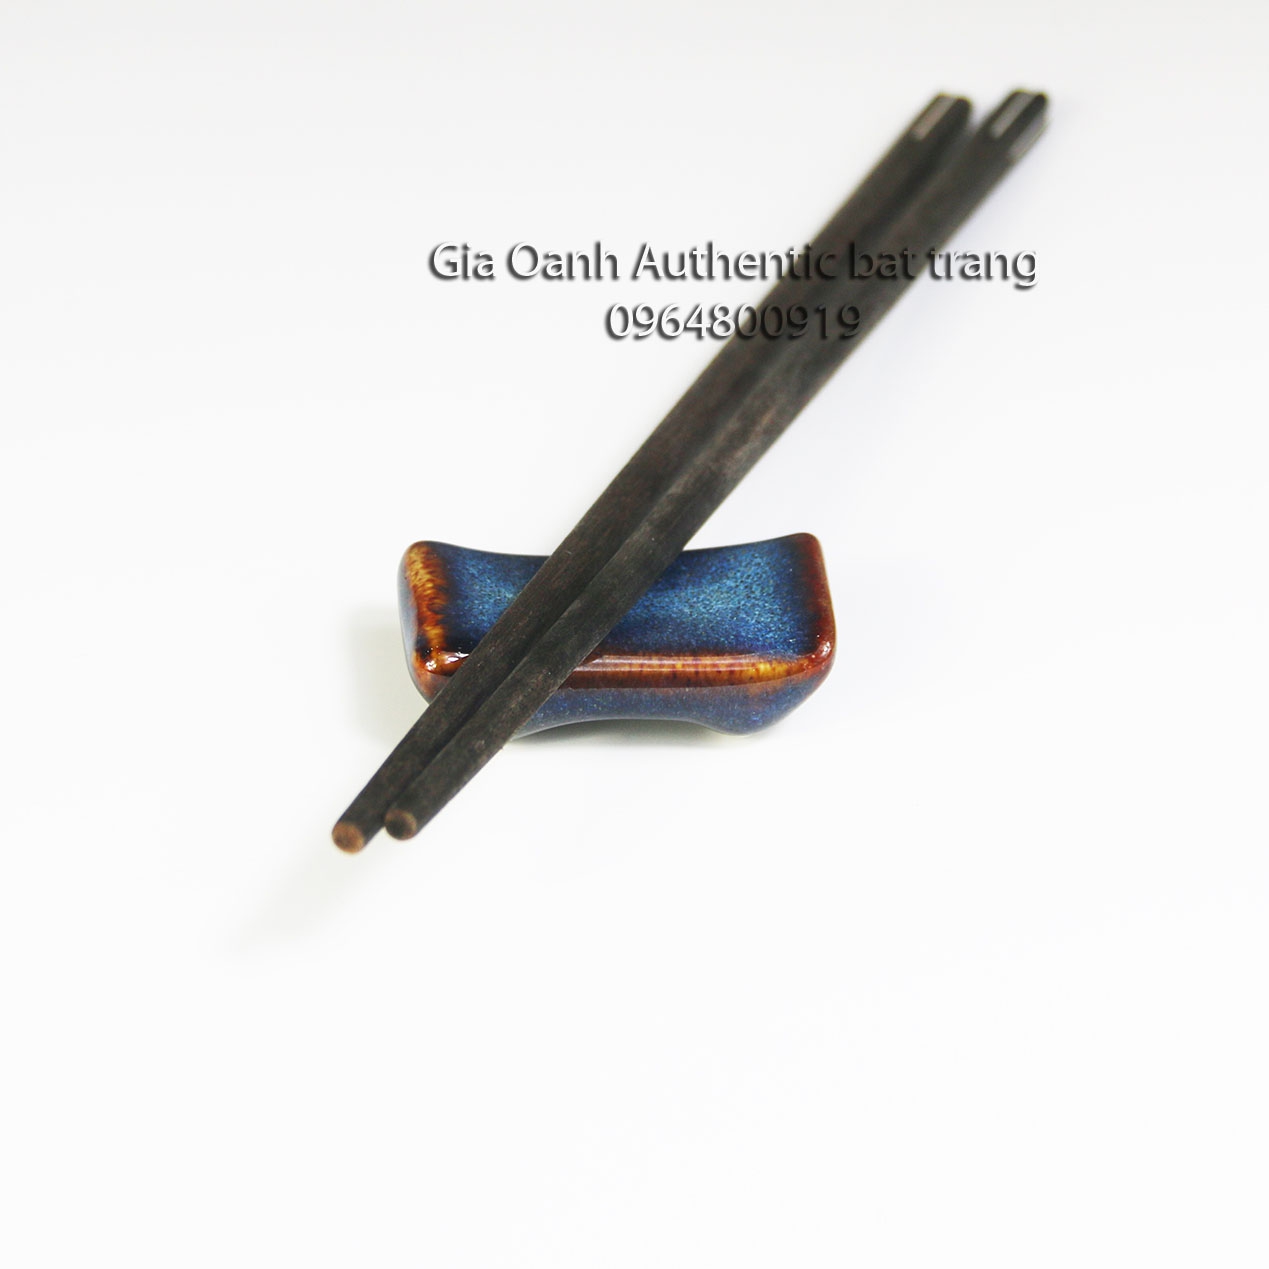 Vietnamese Choptick holder - Các loại Gác đũa sứ men hỏa biến đẳng cấp với nhiều hình dáng khác nhau - sản xuất tại xưởng gốm sứ gia oanh authentic  bat trang